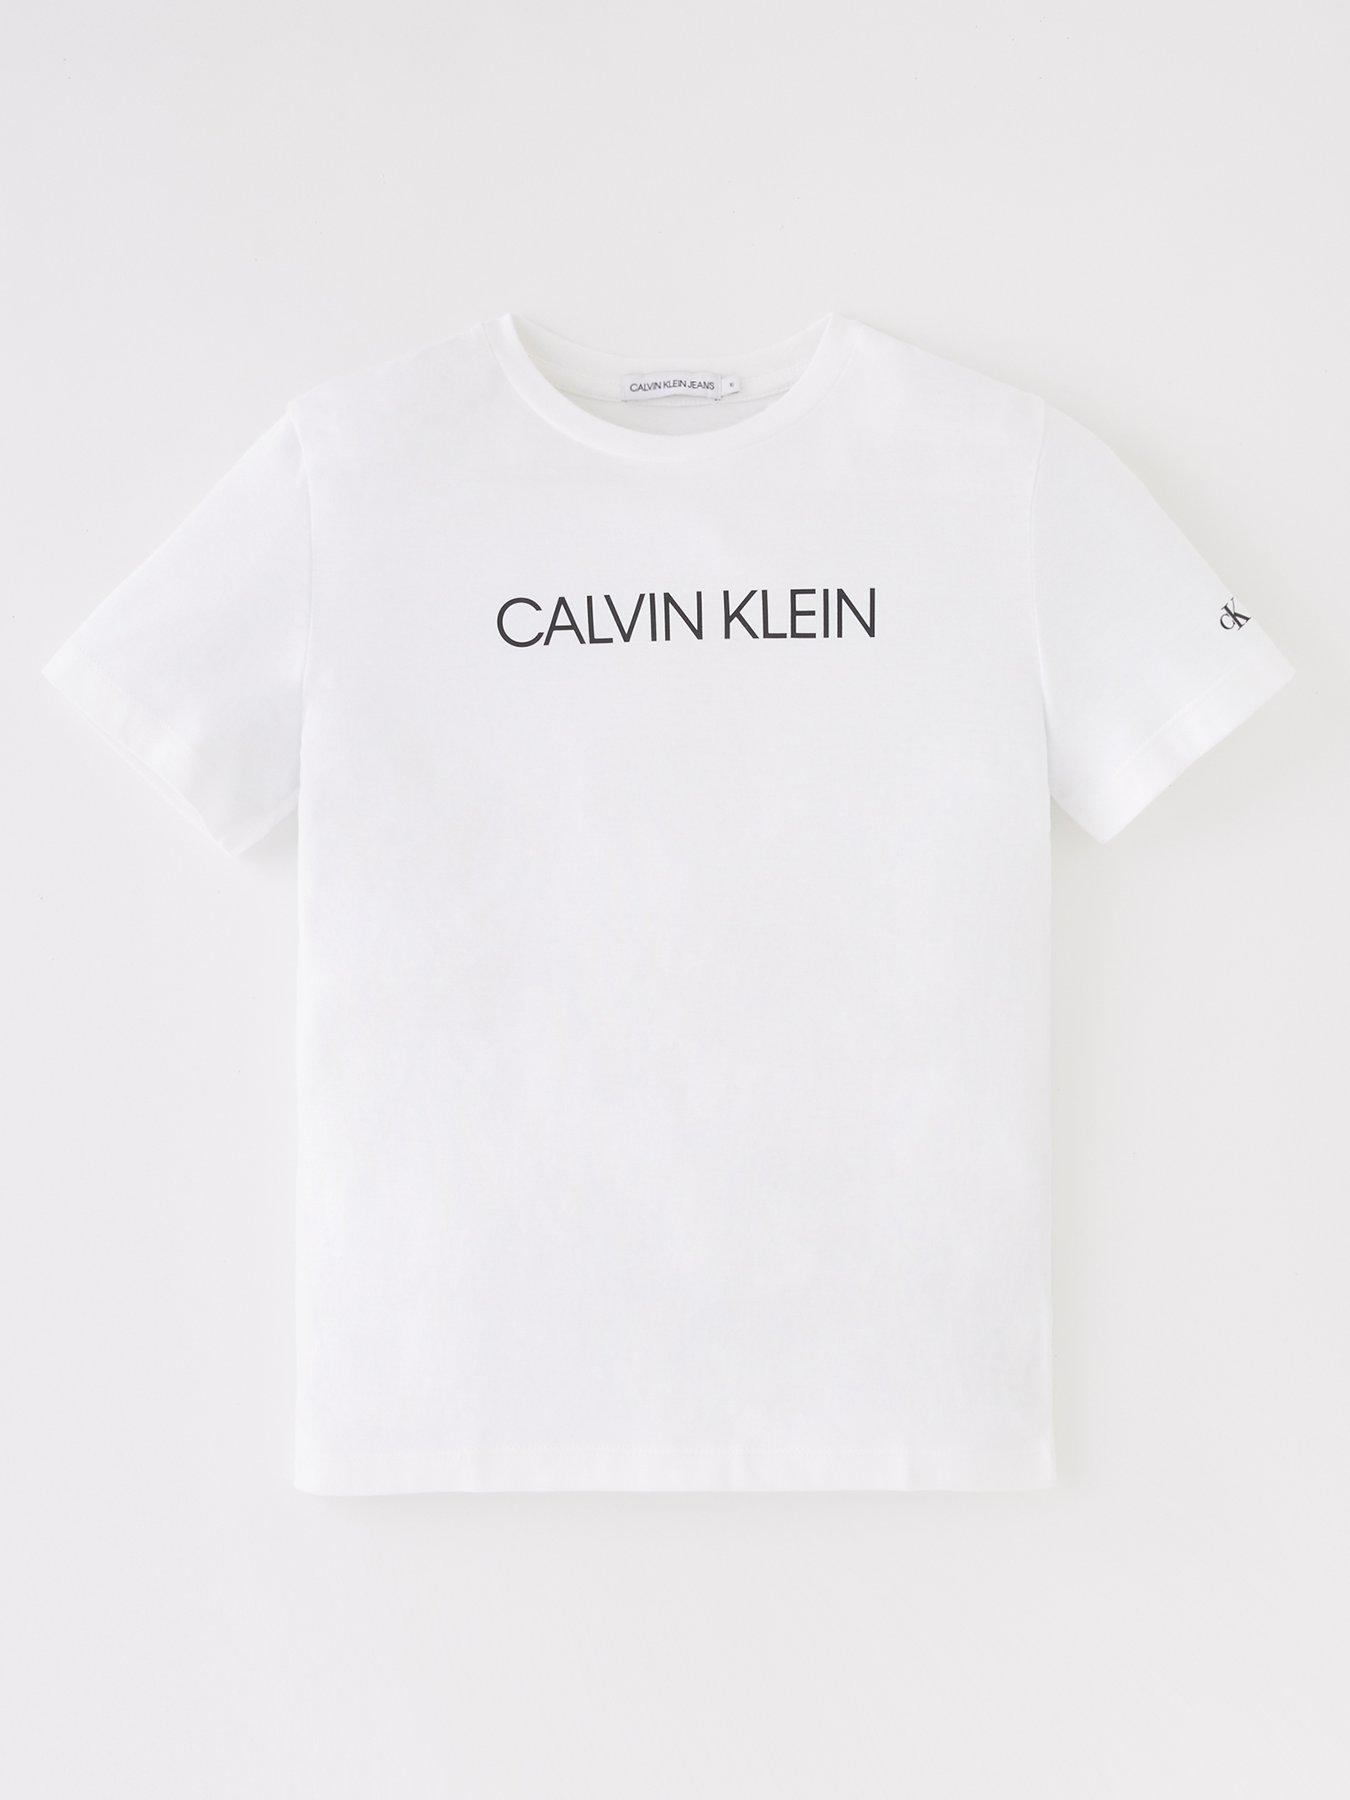 Calvin Klein Boys 2 Pack Trunks - White/Grey